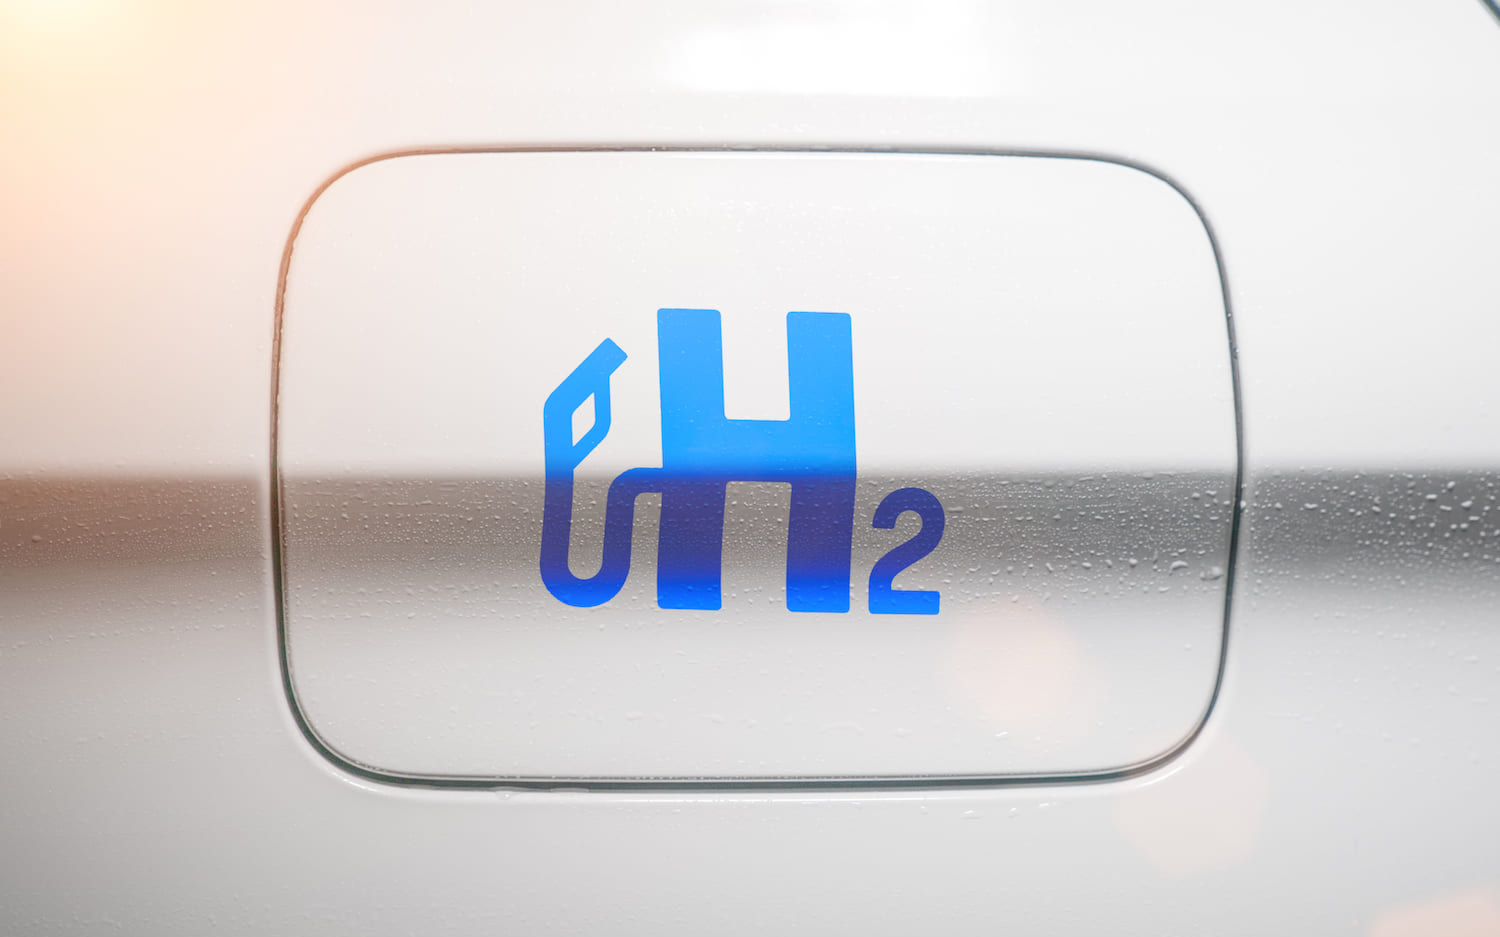 Первый в мире автомобиль с водородным двигателем поступит в продажу в Японии 15 декабря